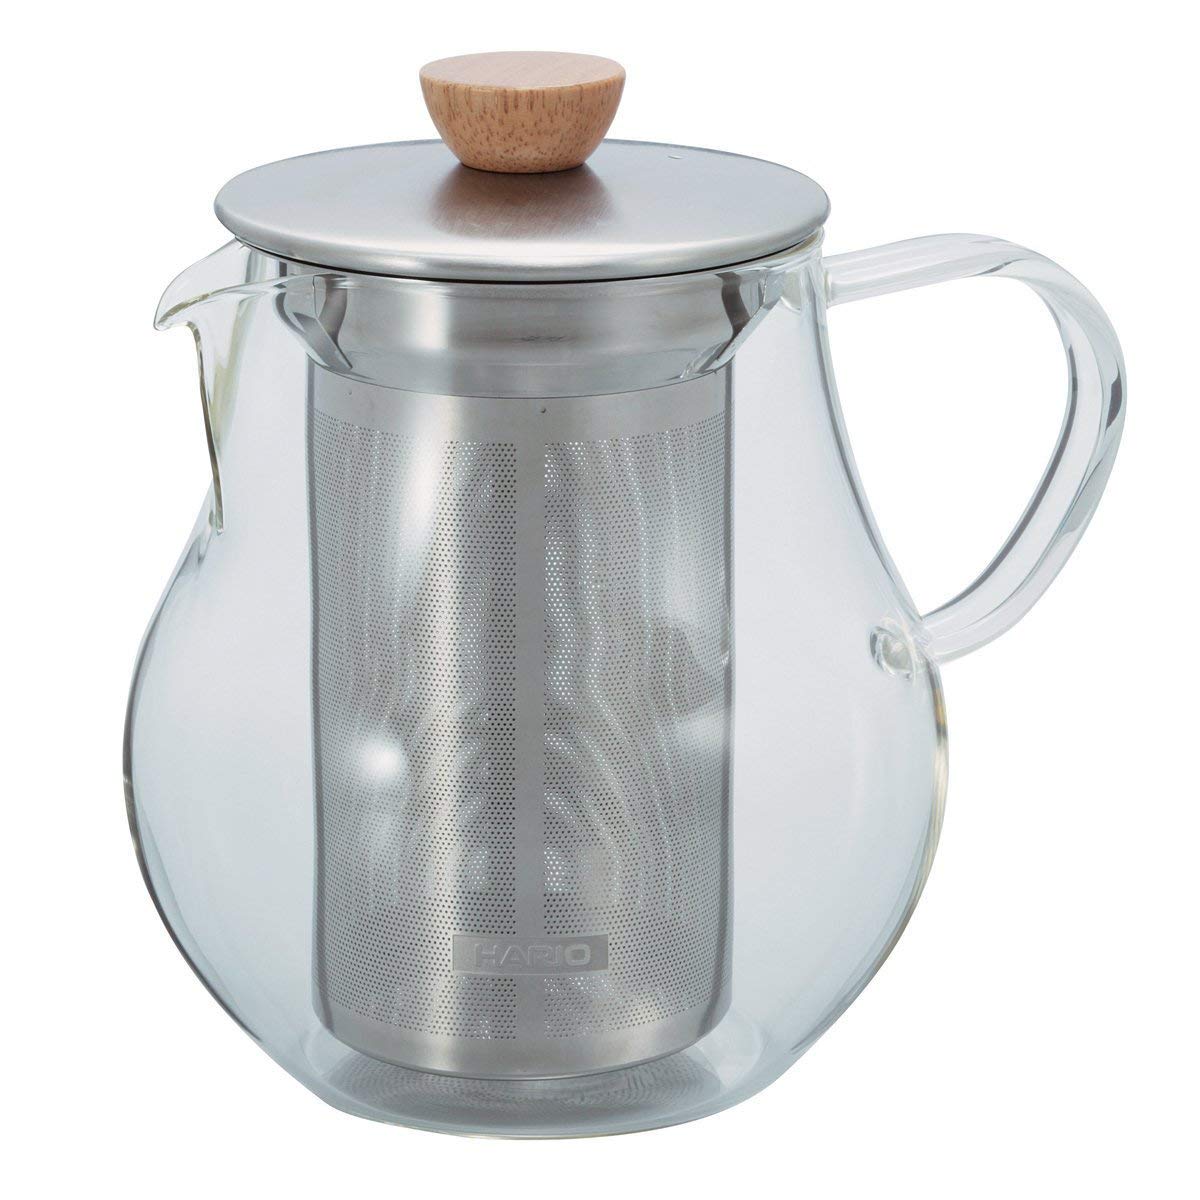 Bule de Vidro para Chá Hario – 450 ml - Urbe Café